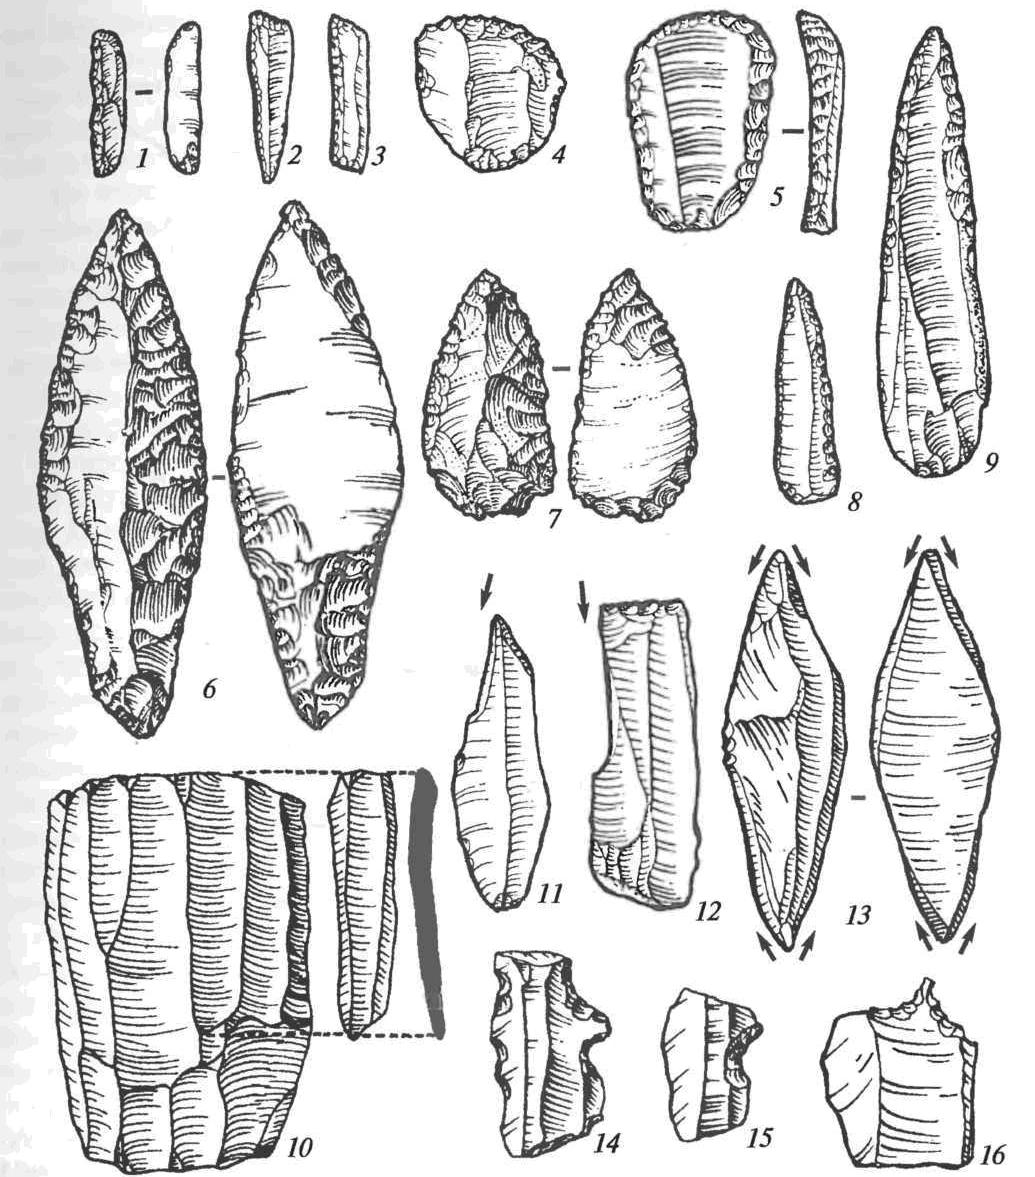 Каменные орудия верхнего палеолита: 1-3 — микропластинки с ретушью; 4, 5 — скребки; 6,7 — наконечники; 8, 9 — острия; 10 — призматический нуклеус со сколотой с него пластиной; 11-13 — резцы; 14, 15 — зубчато-выемчатые орудия; 16 — проколка 